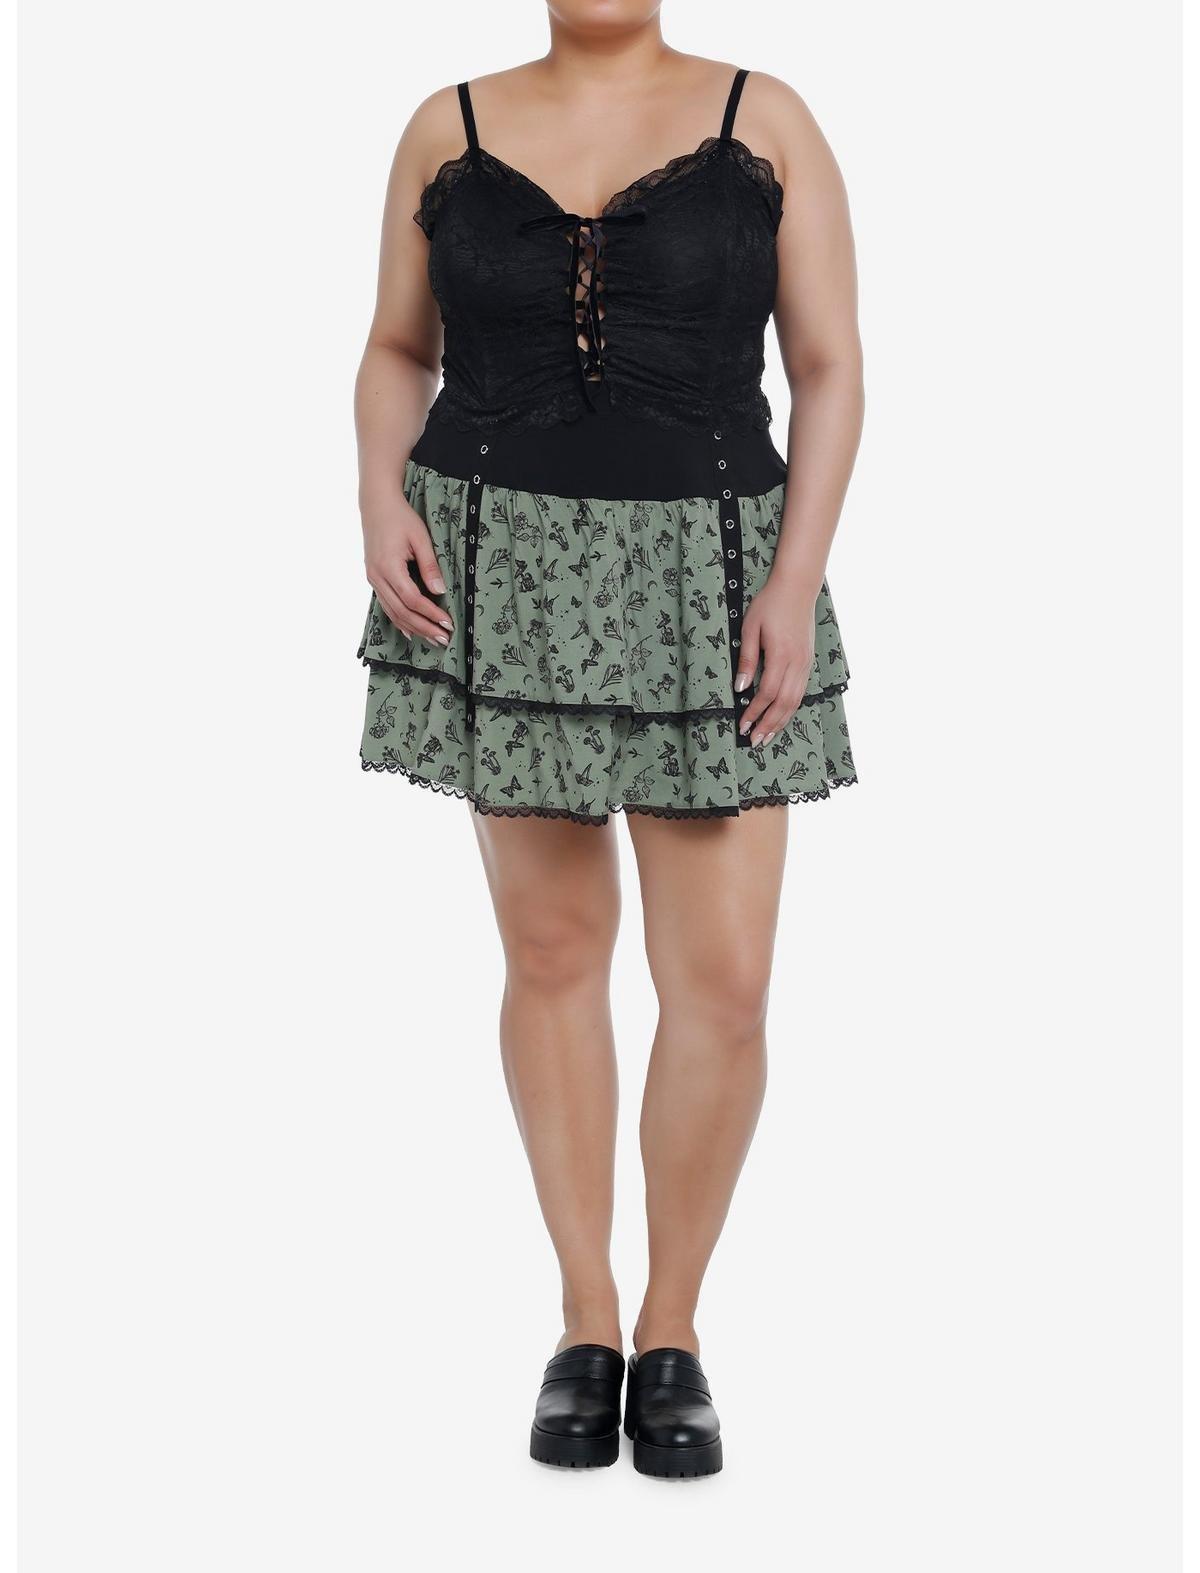 Thorn & Fable Black Lace Corset Crop Cami Plus Size, BLACK, alternate